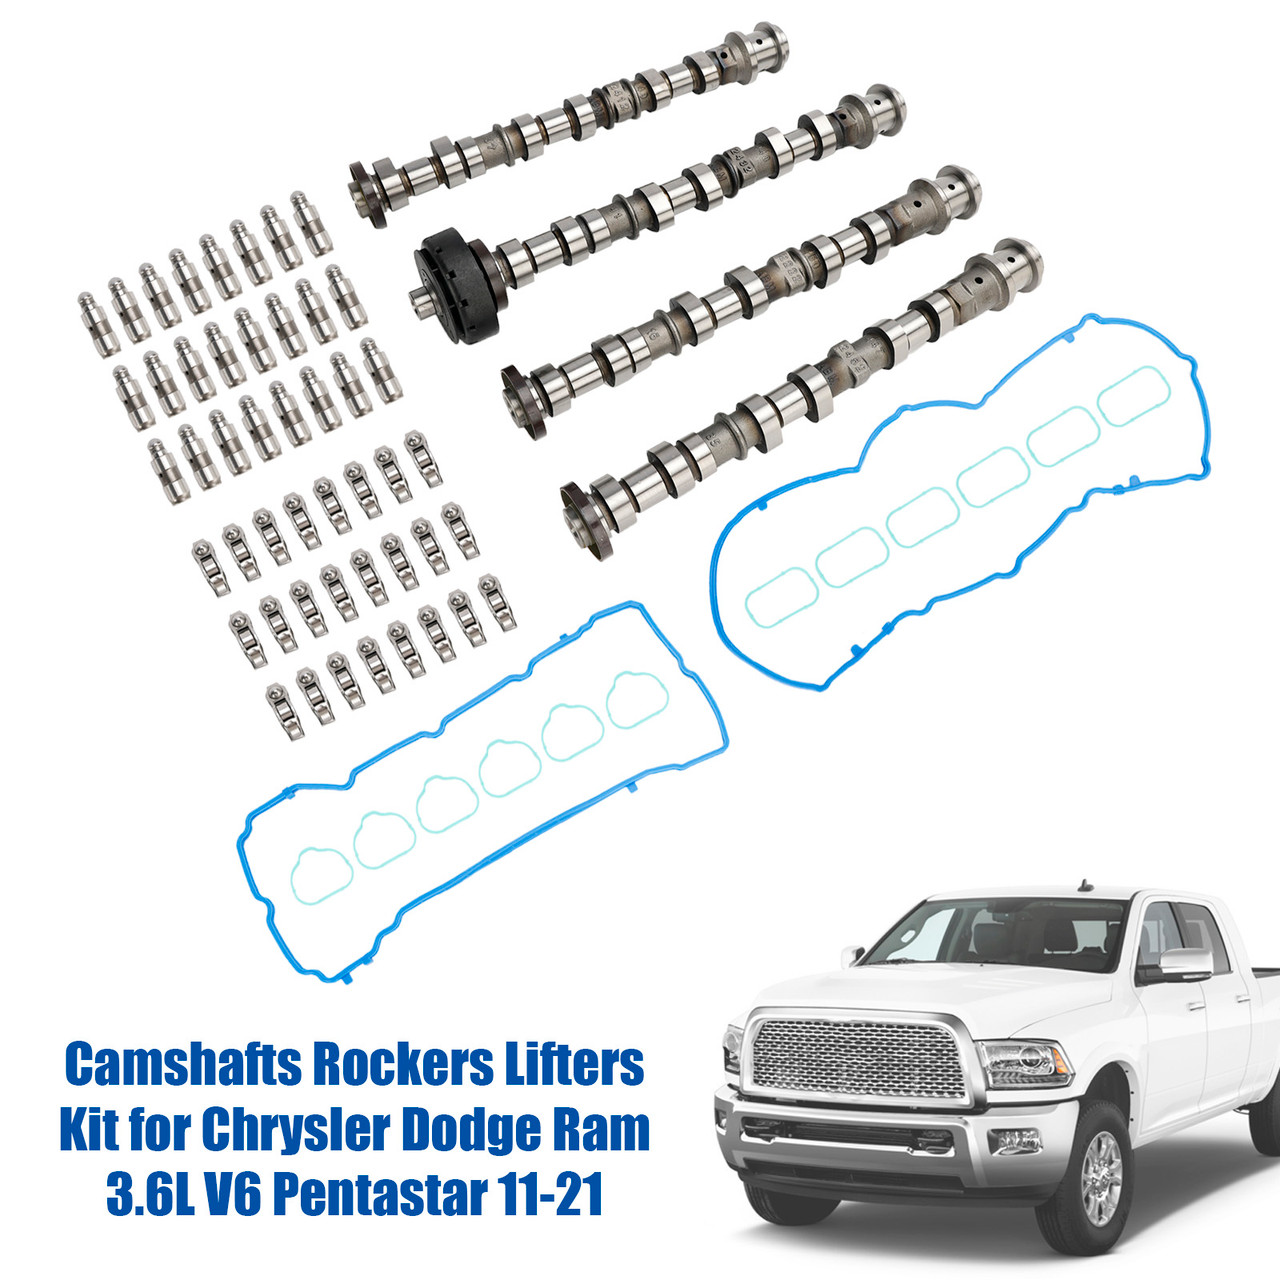 Camshafts Rockers Lifters Kit for Chrysler Dodge Ram 3.6L V6 Pentastar 11-21